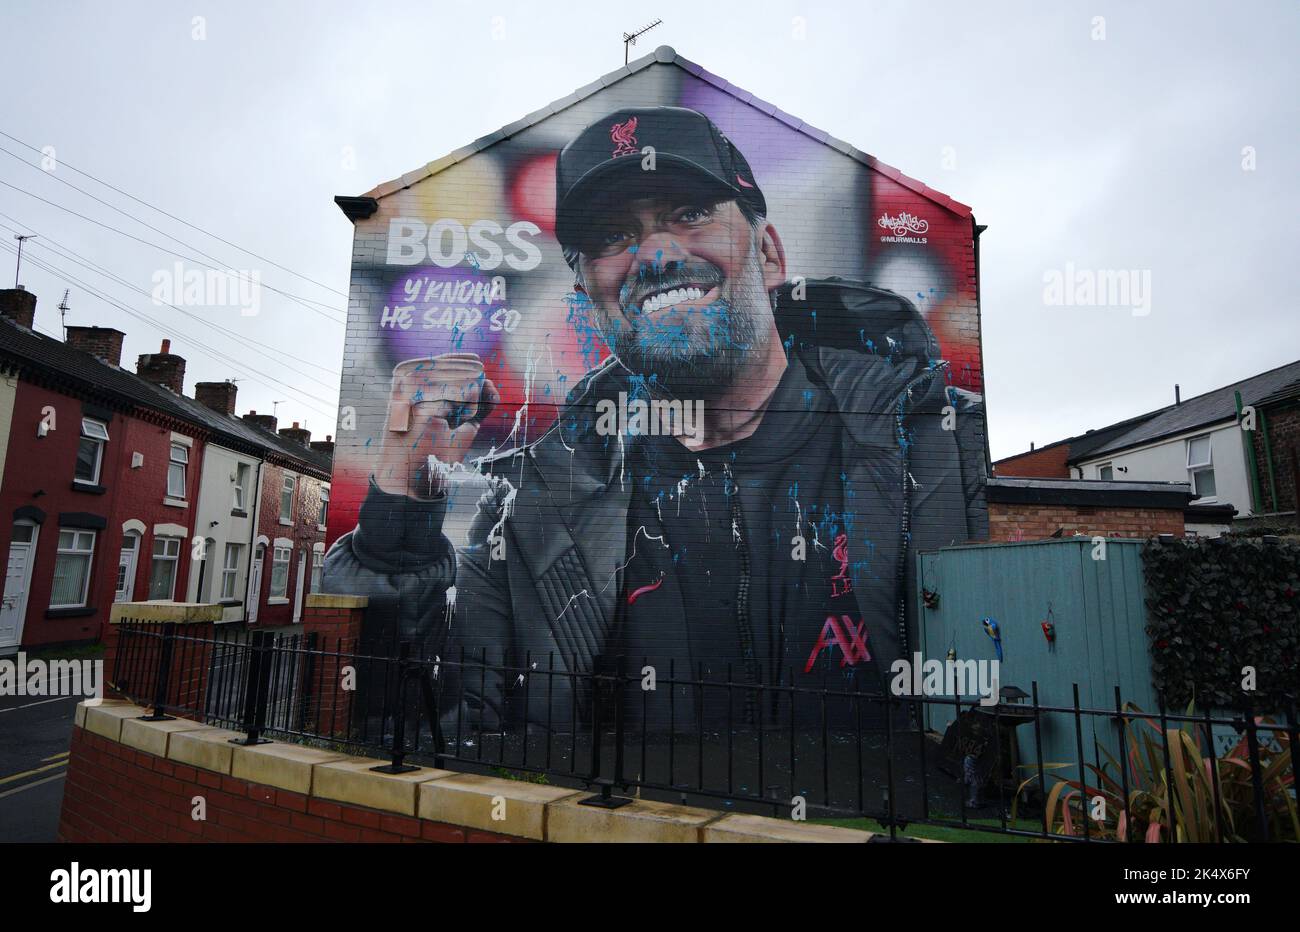 Ein Wandgemälde des Liverpooler Managers Jurgen Klopp Liverpool, das entstellt wurde. Bilddatum: Dienstag, 4. Oktober 2022. Stockfoto